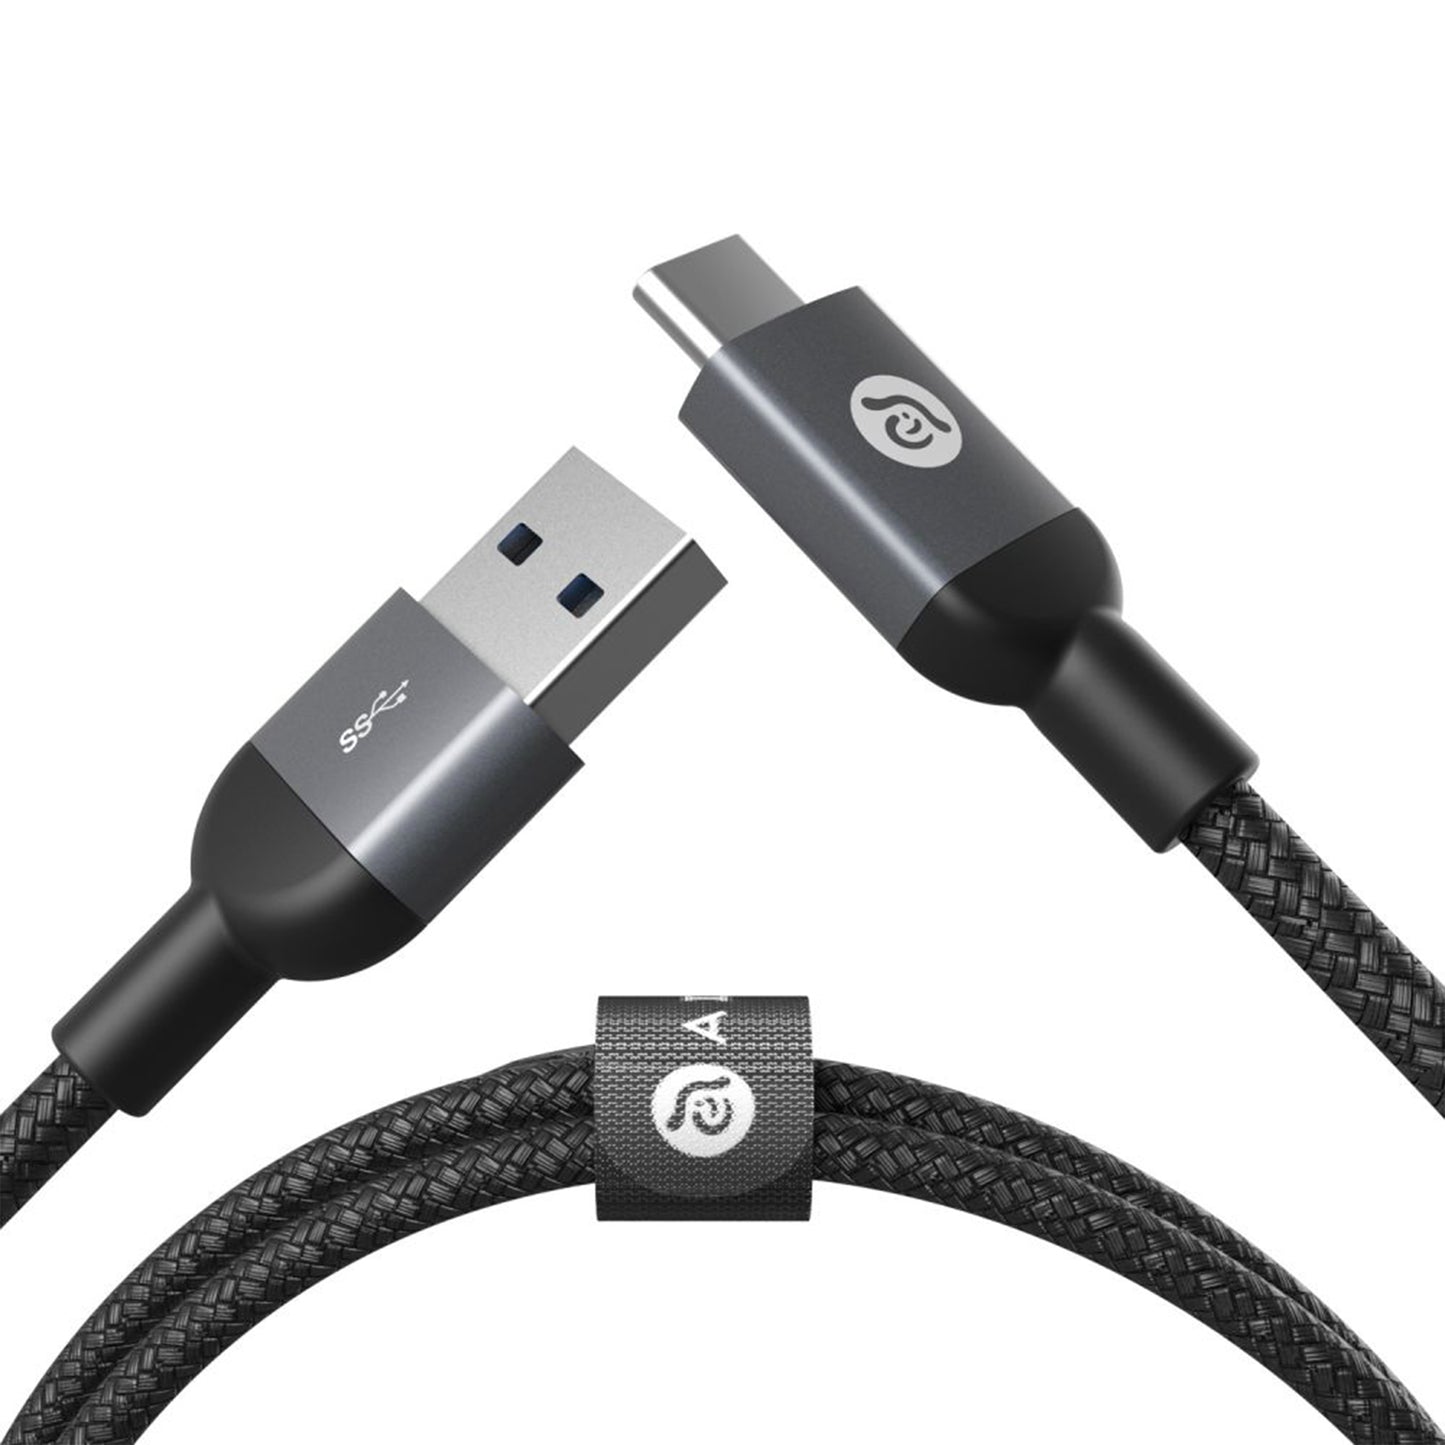 ADAM ELEMENTS Casa M100+ USB3.1 Gen2 USB-C to USB-A Cable - Black